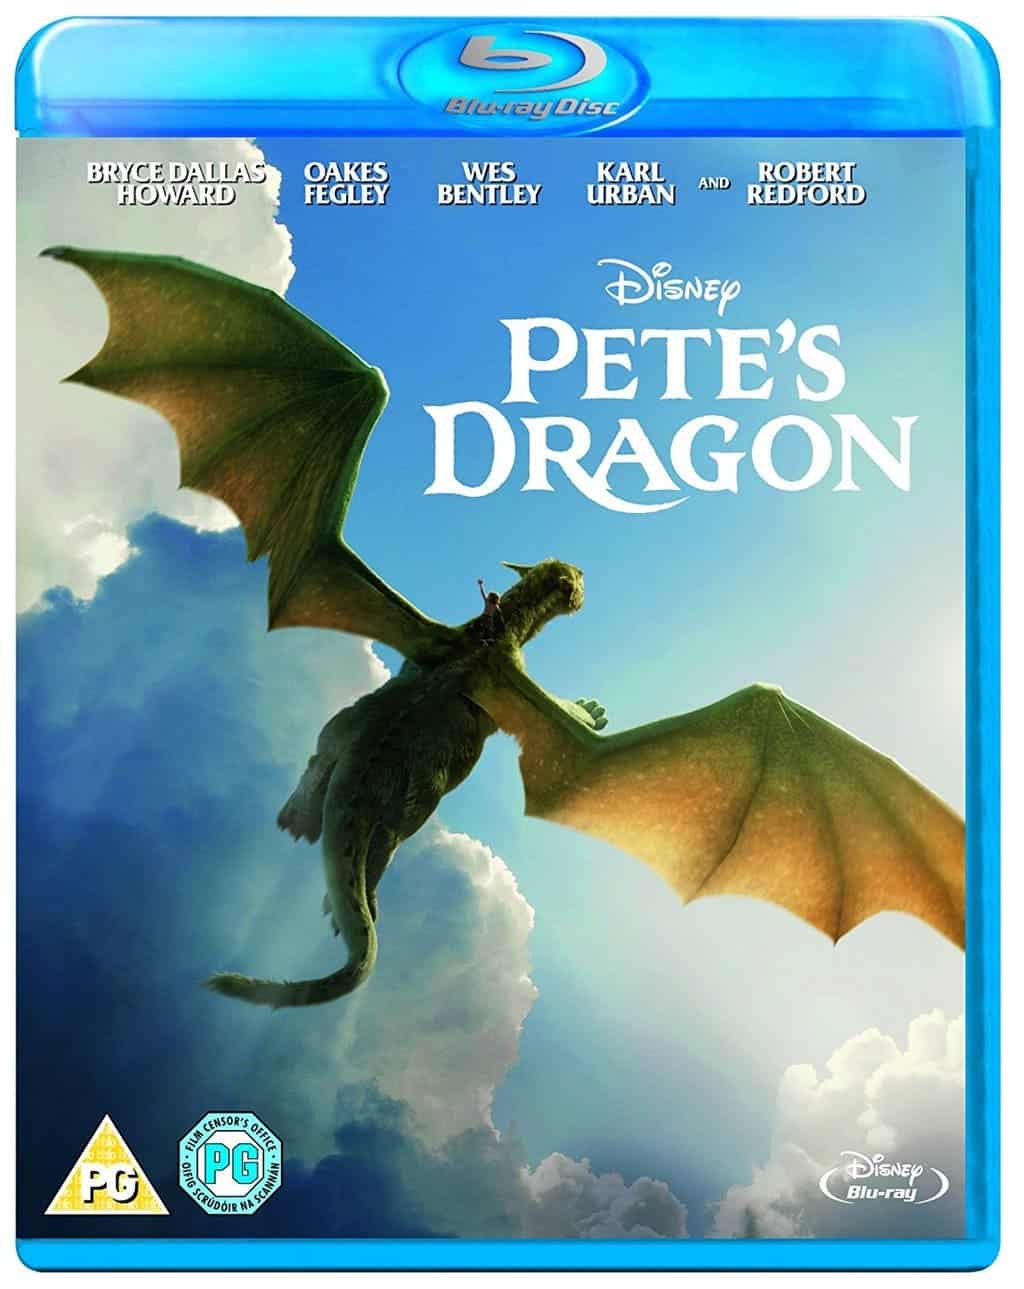 Dragon and Pete's Dragon